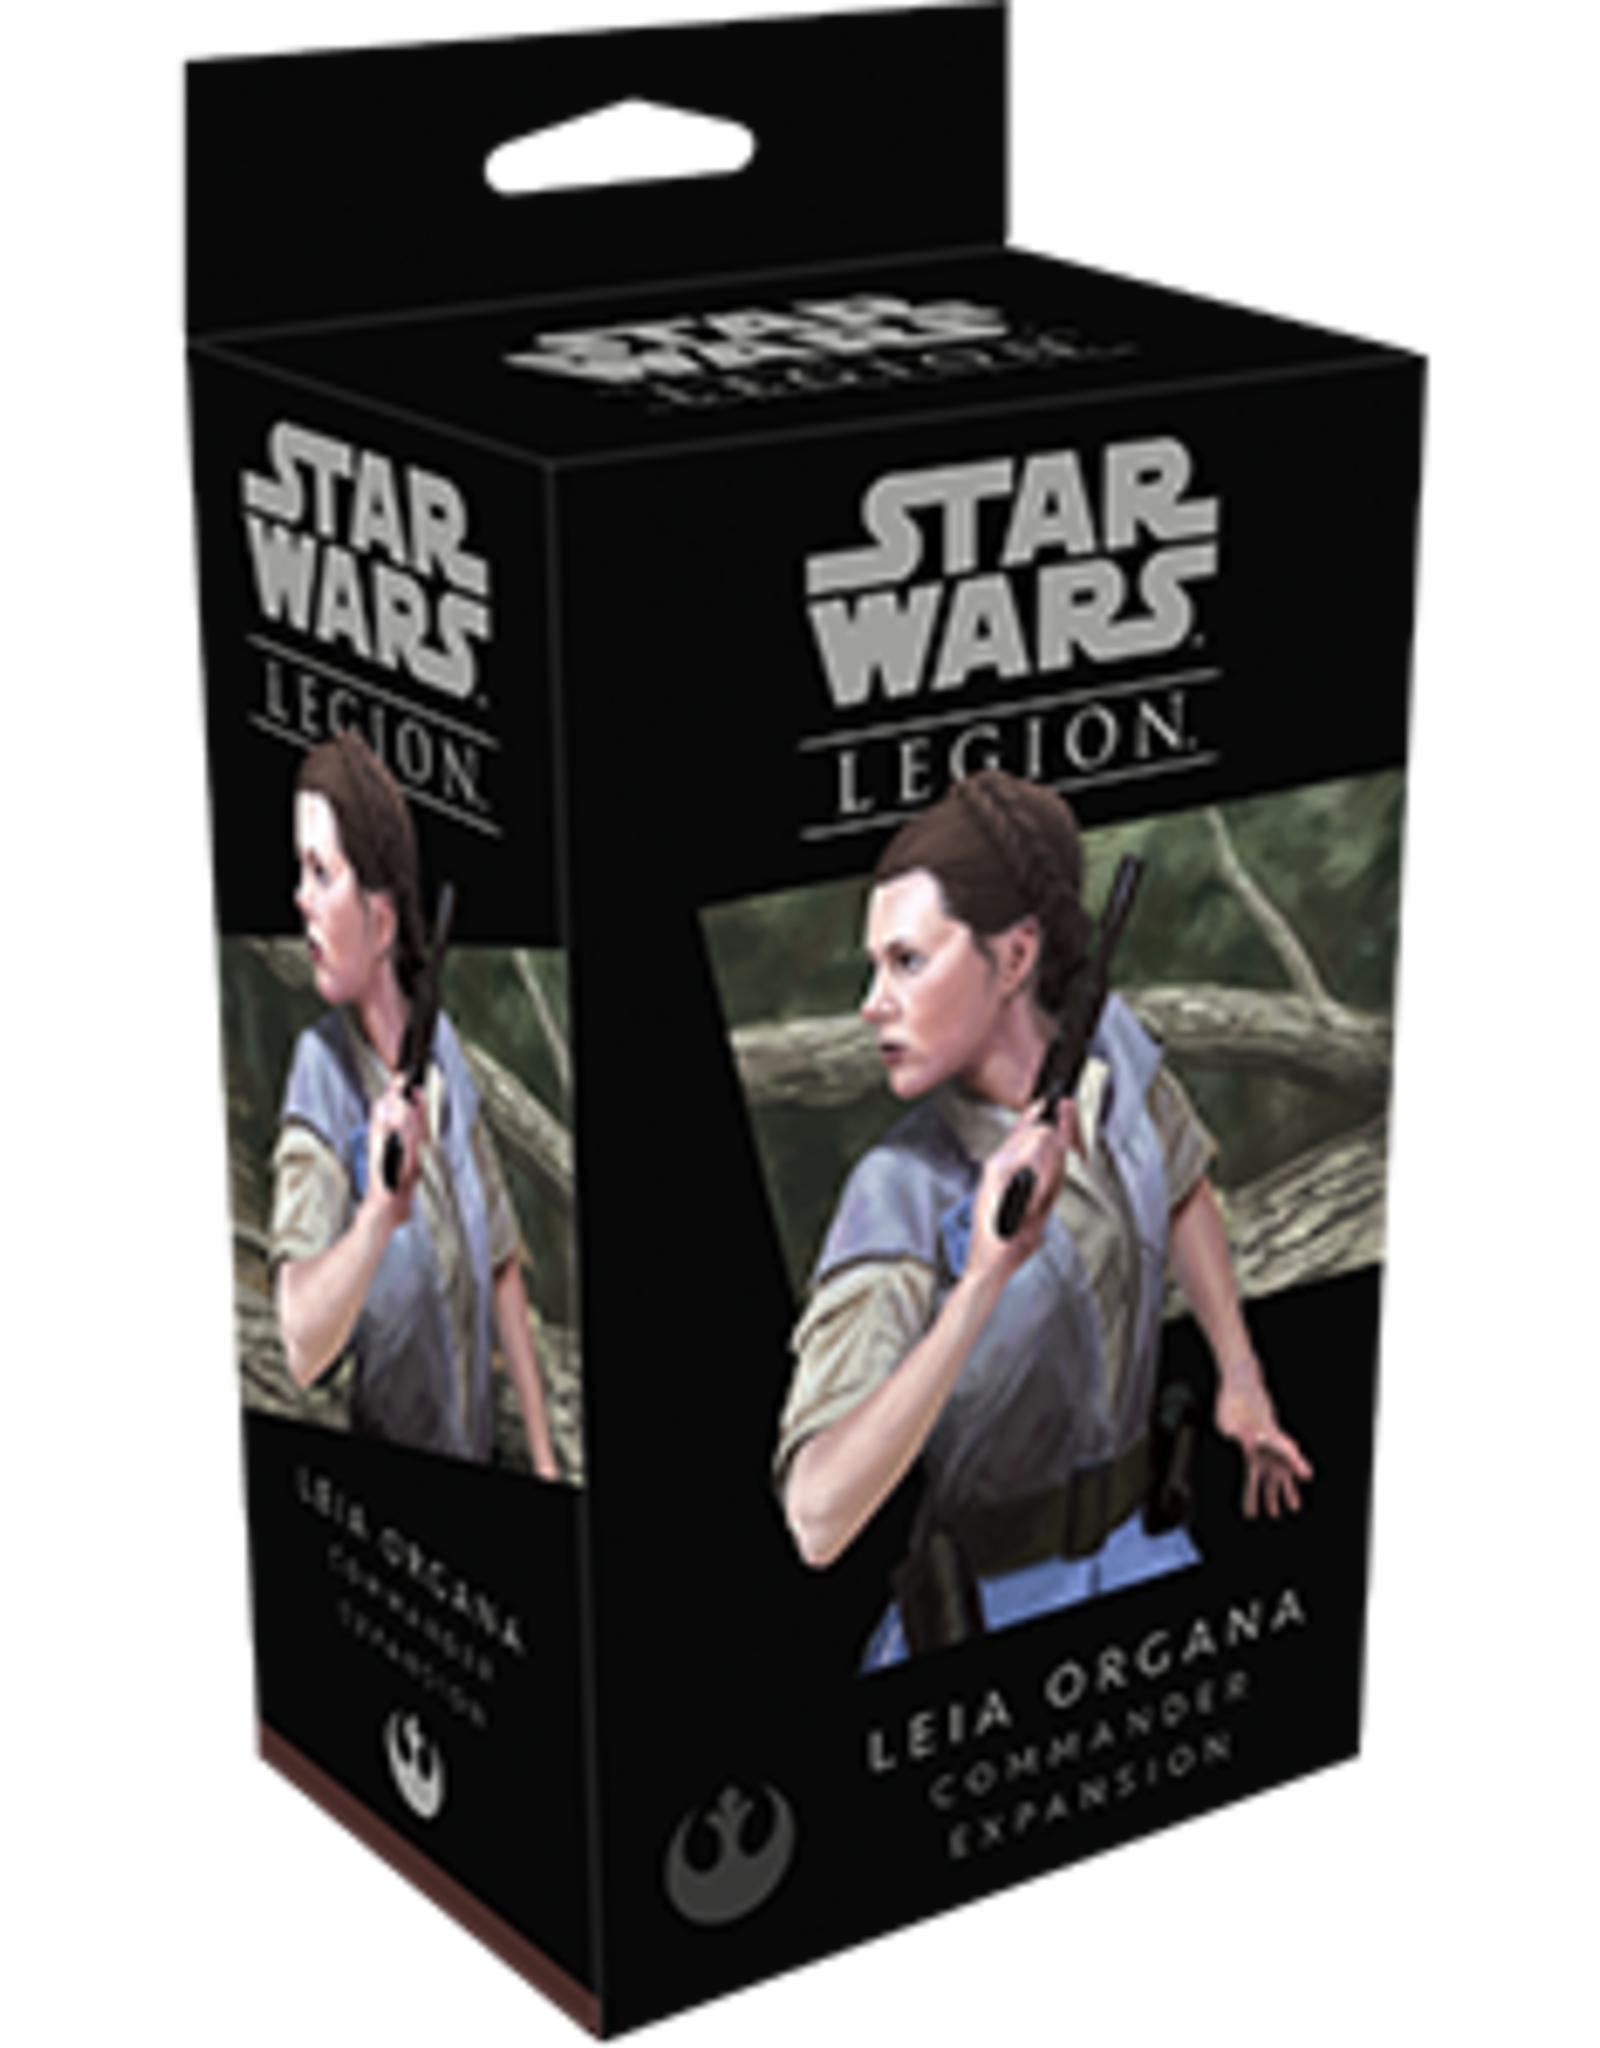 FFG Star Wars Legion : General Leia